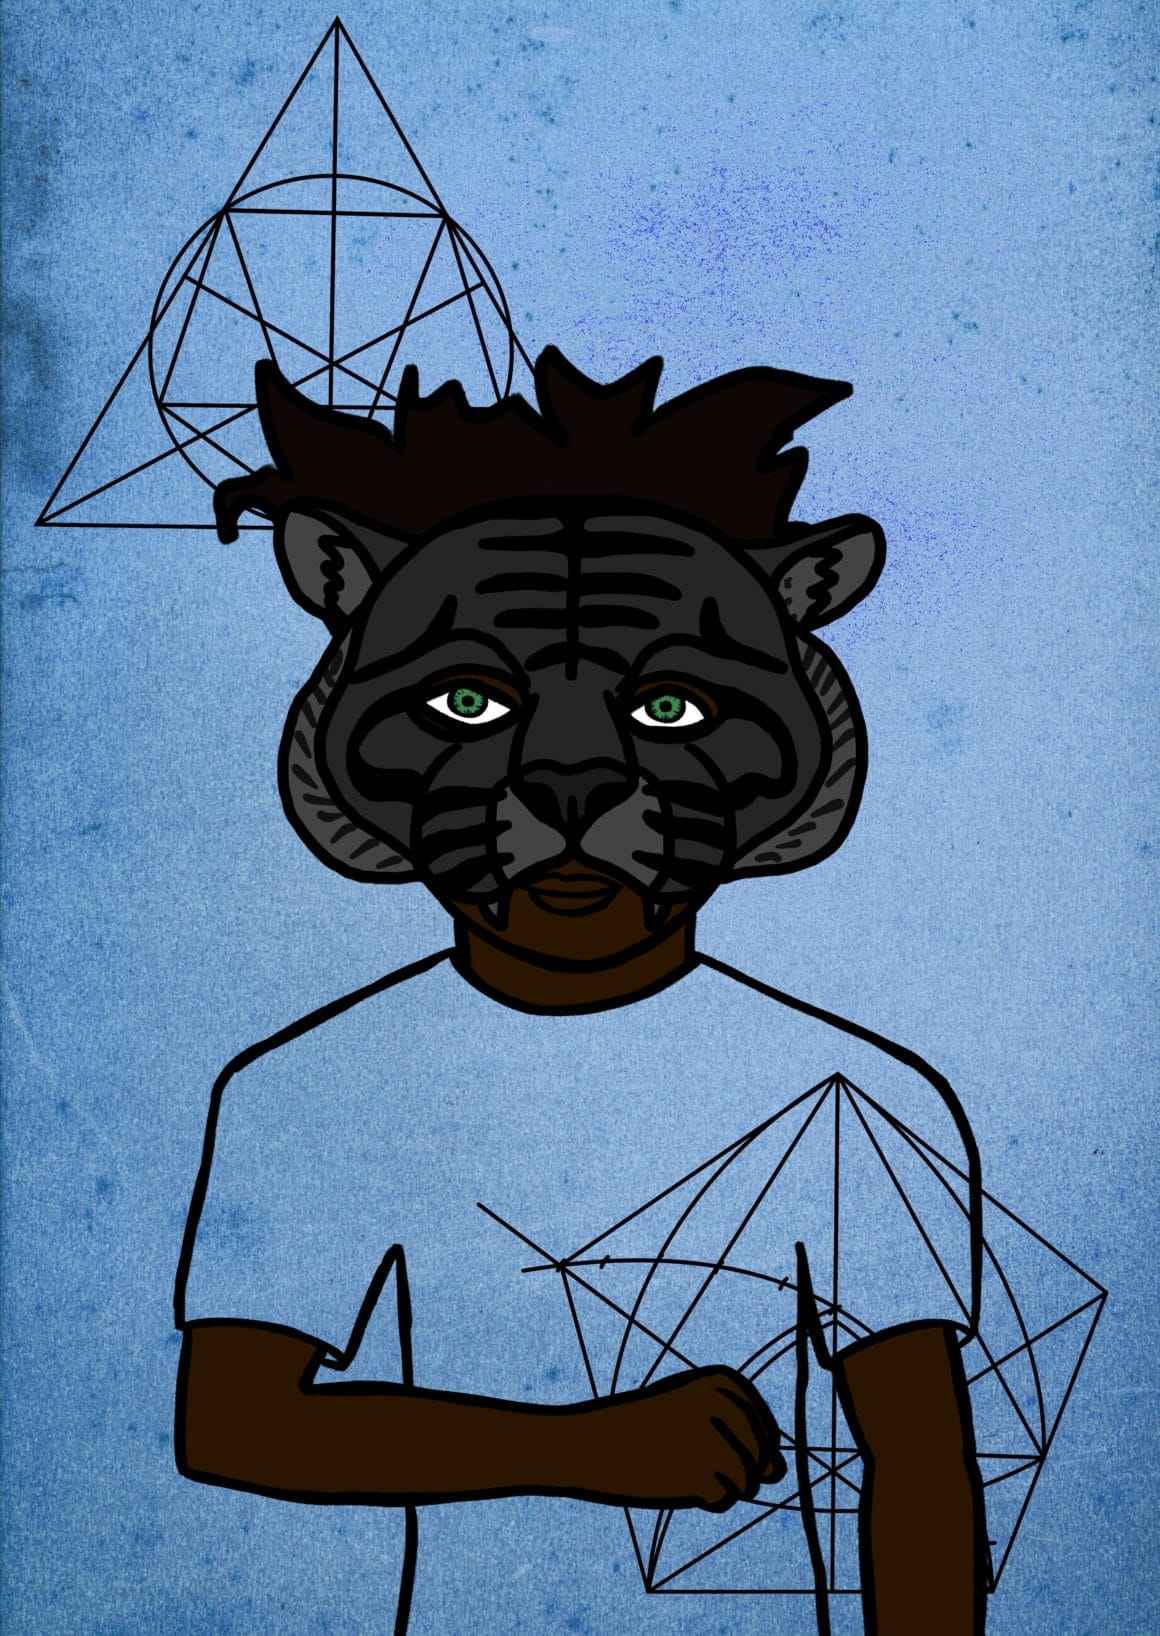 Fond bleu, personnage qui porte un masque de tigre gris